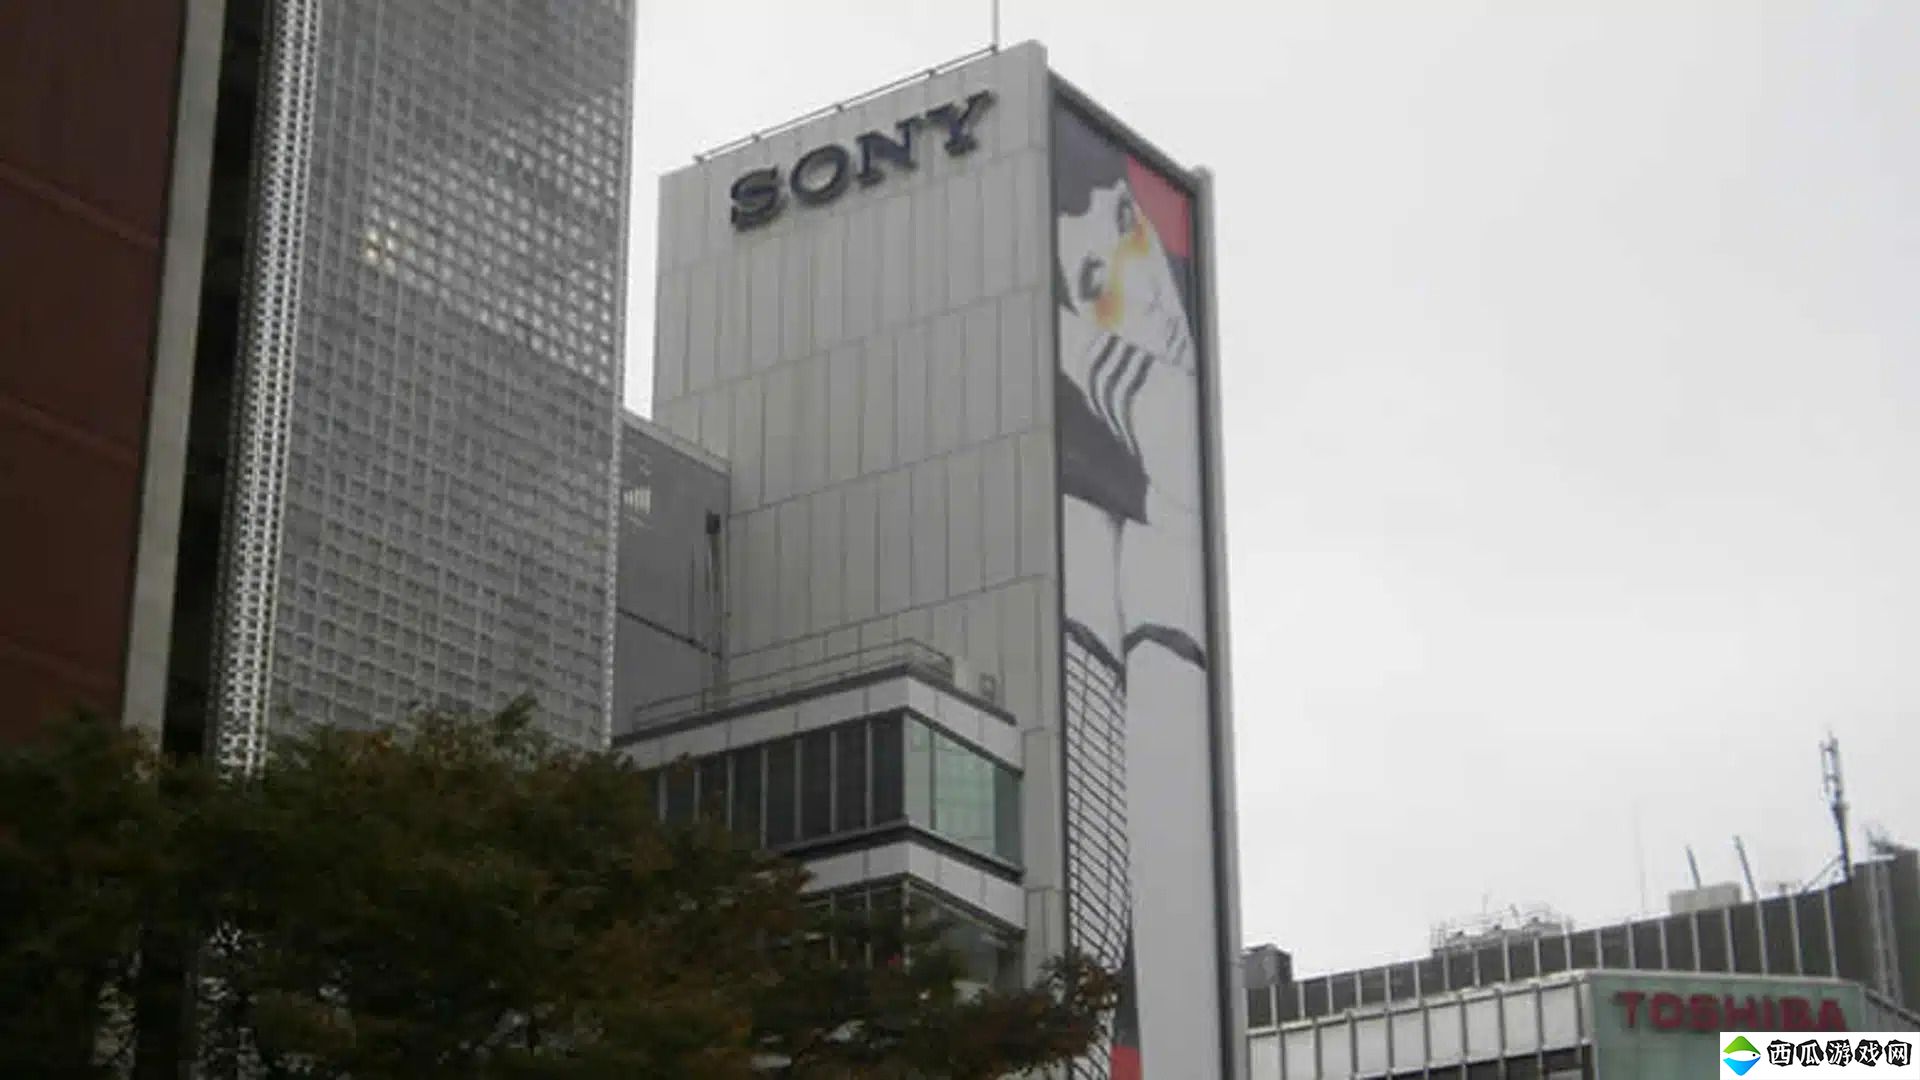 实体光盘需求下降 索尼日本制造部门裁员250人